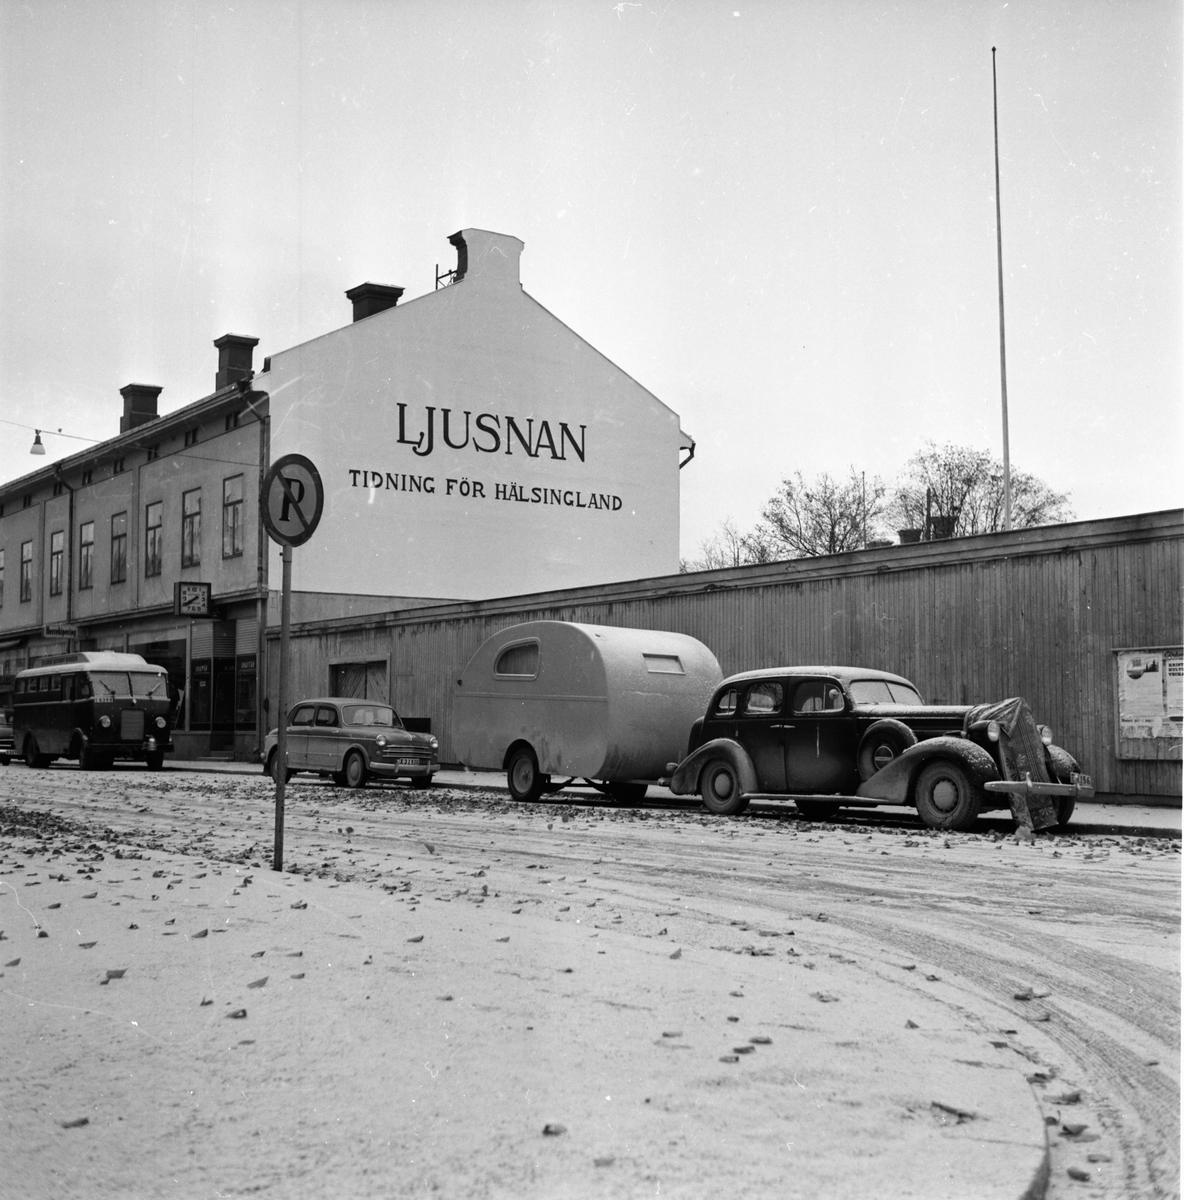 Höstbild från Bollnäs odengatan
med gavaltext Ljusnan mot torget våggatan
Oktober 1955